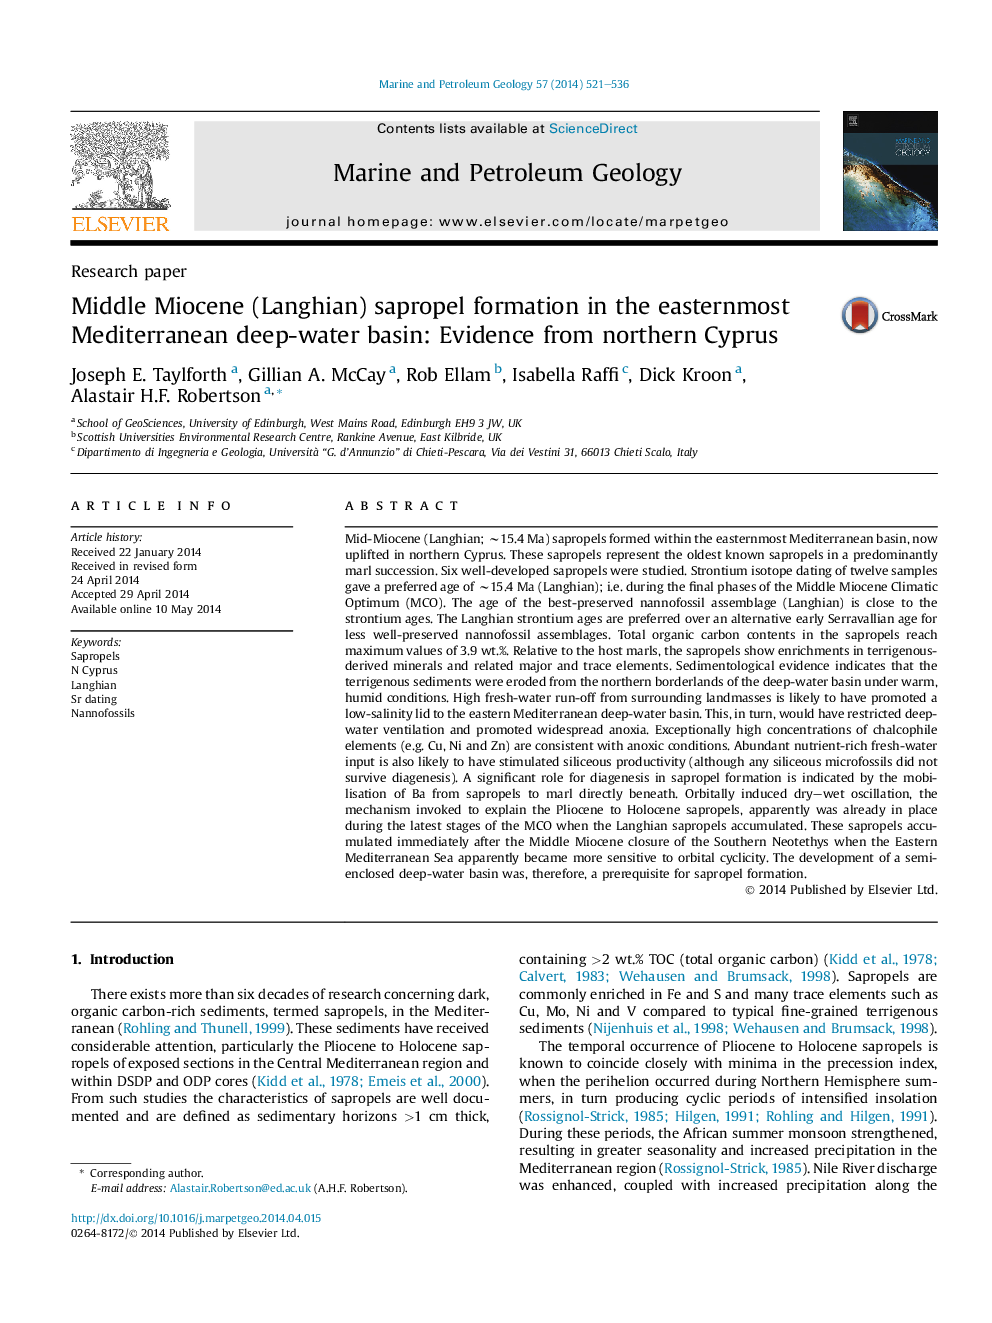 تشکیل سفروپلیمر میوسن میانه (لانگ یان) در حوضه آبریزش شرقی دریای مدیترانه: شواهد از شمال قبرس 